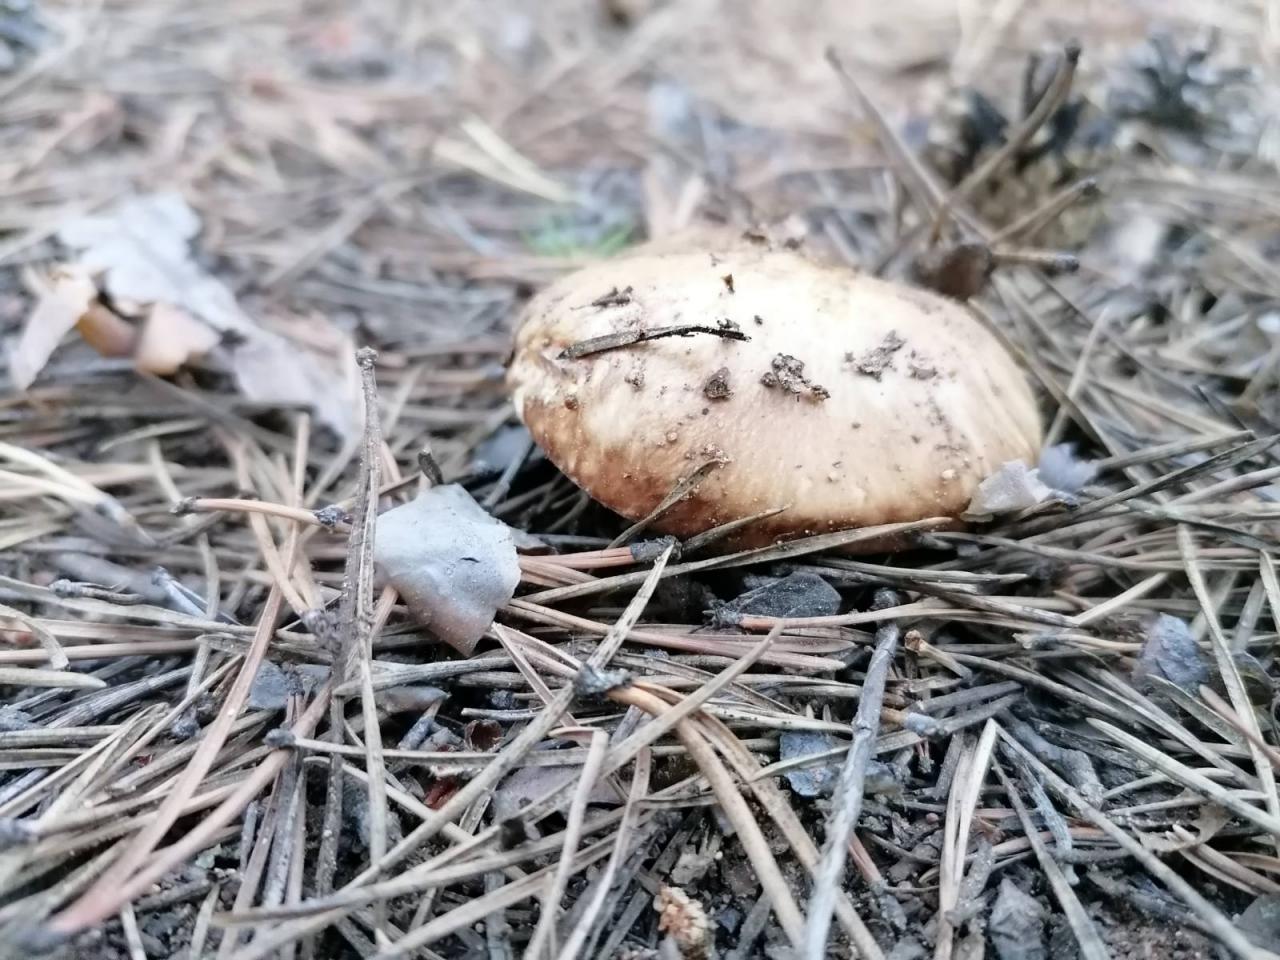 Аномальное Забайкалье: в этом году на месяц раньше положенного срока появились грибы - вот такие маслята были обнаружены нашим корреспондентом 14 июня в лесу в Сенной Пади